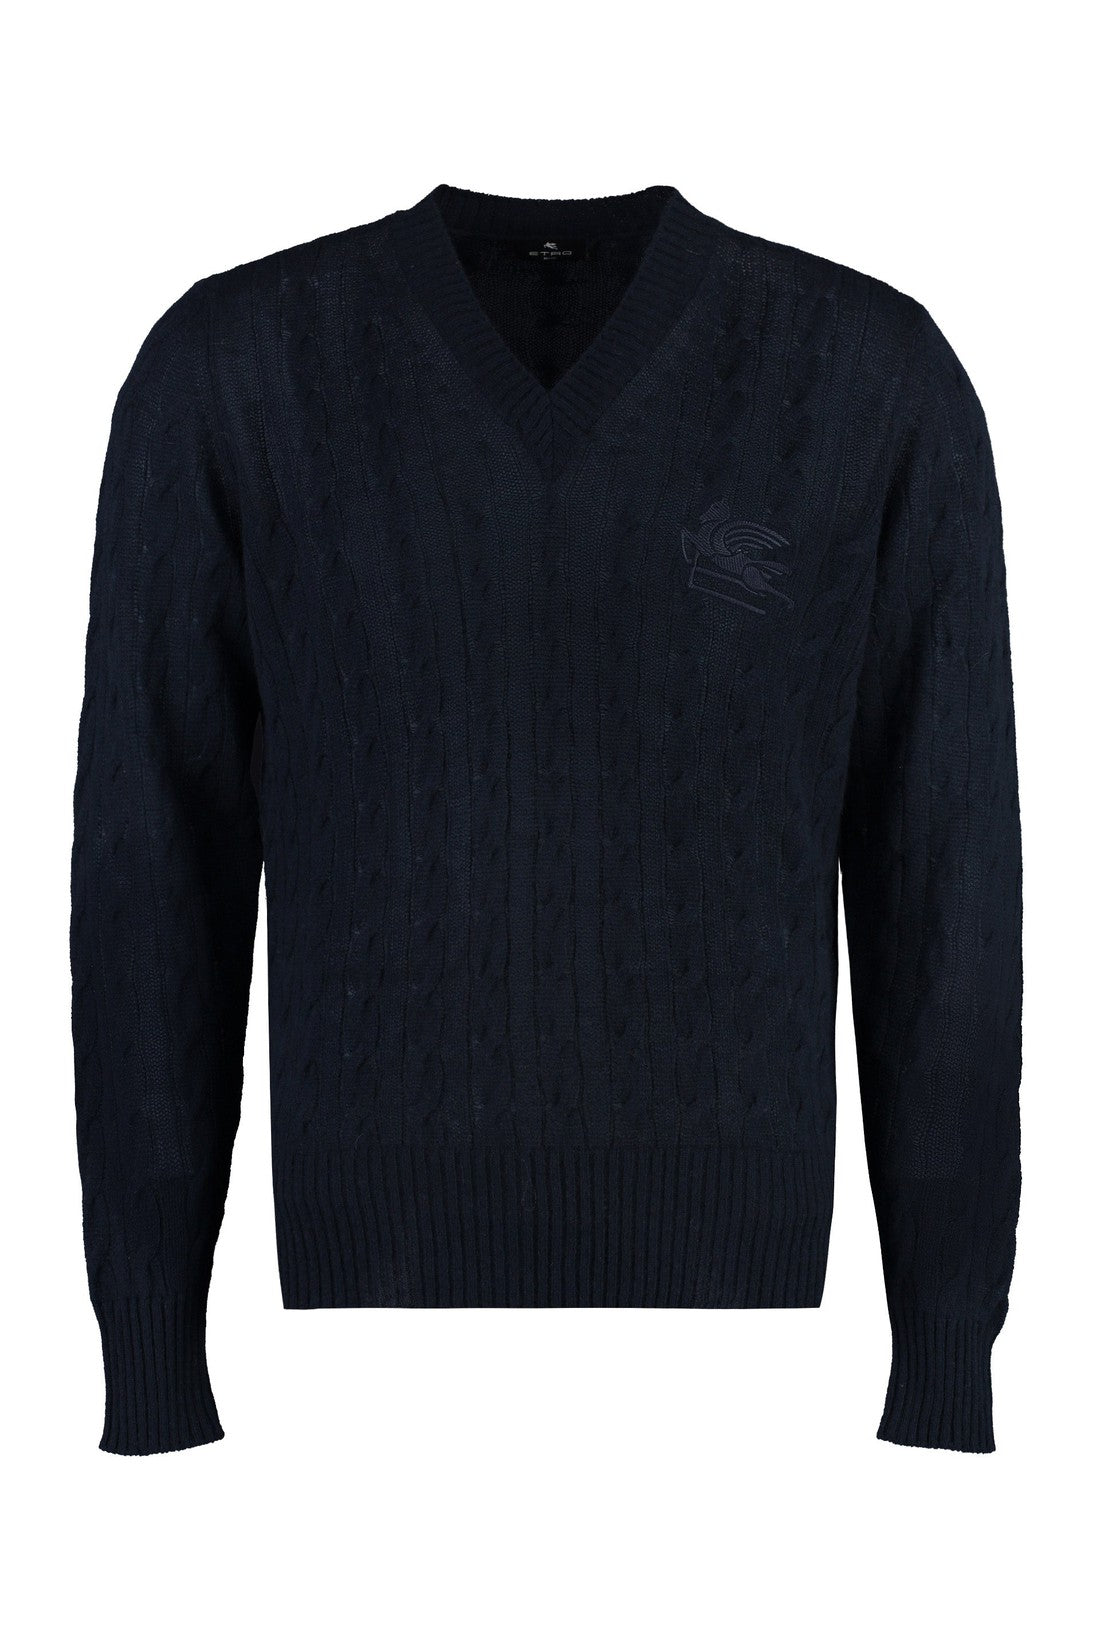 Etro-OUTLET-SALE-Cashmere sweater-ARCHIVIST